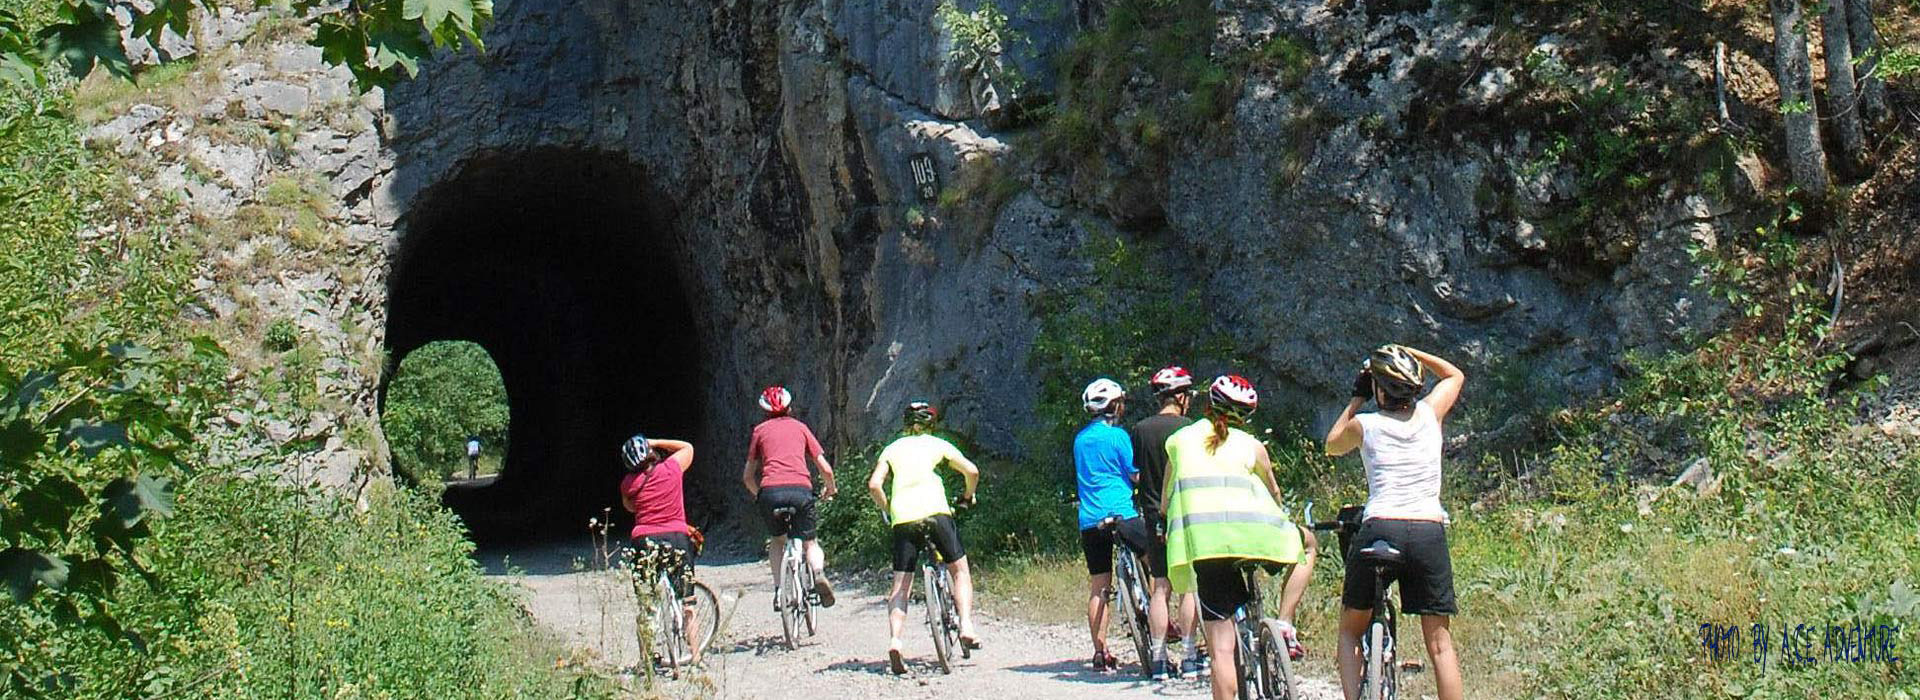 Cycling Balkans guided holiday - Praca canyon